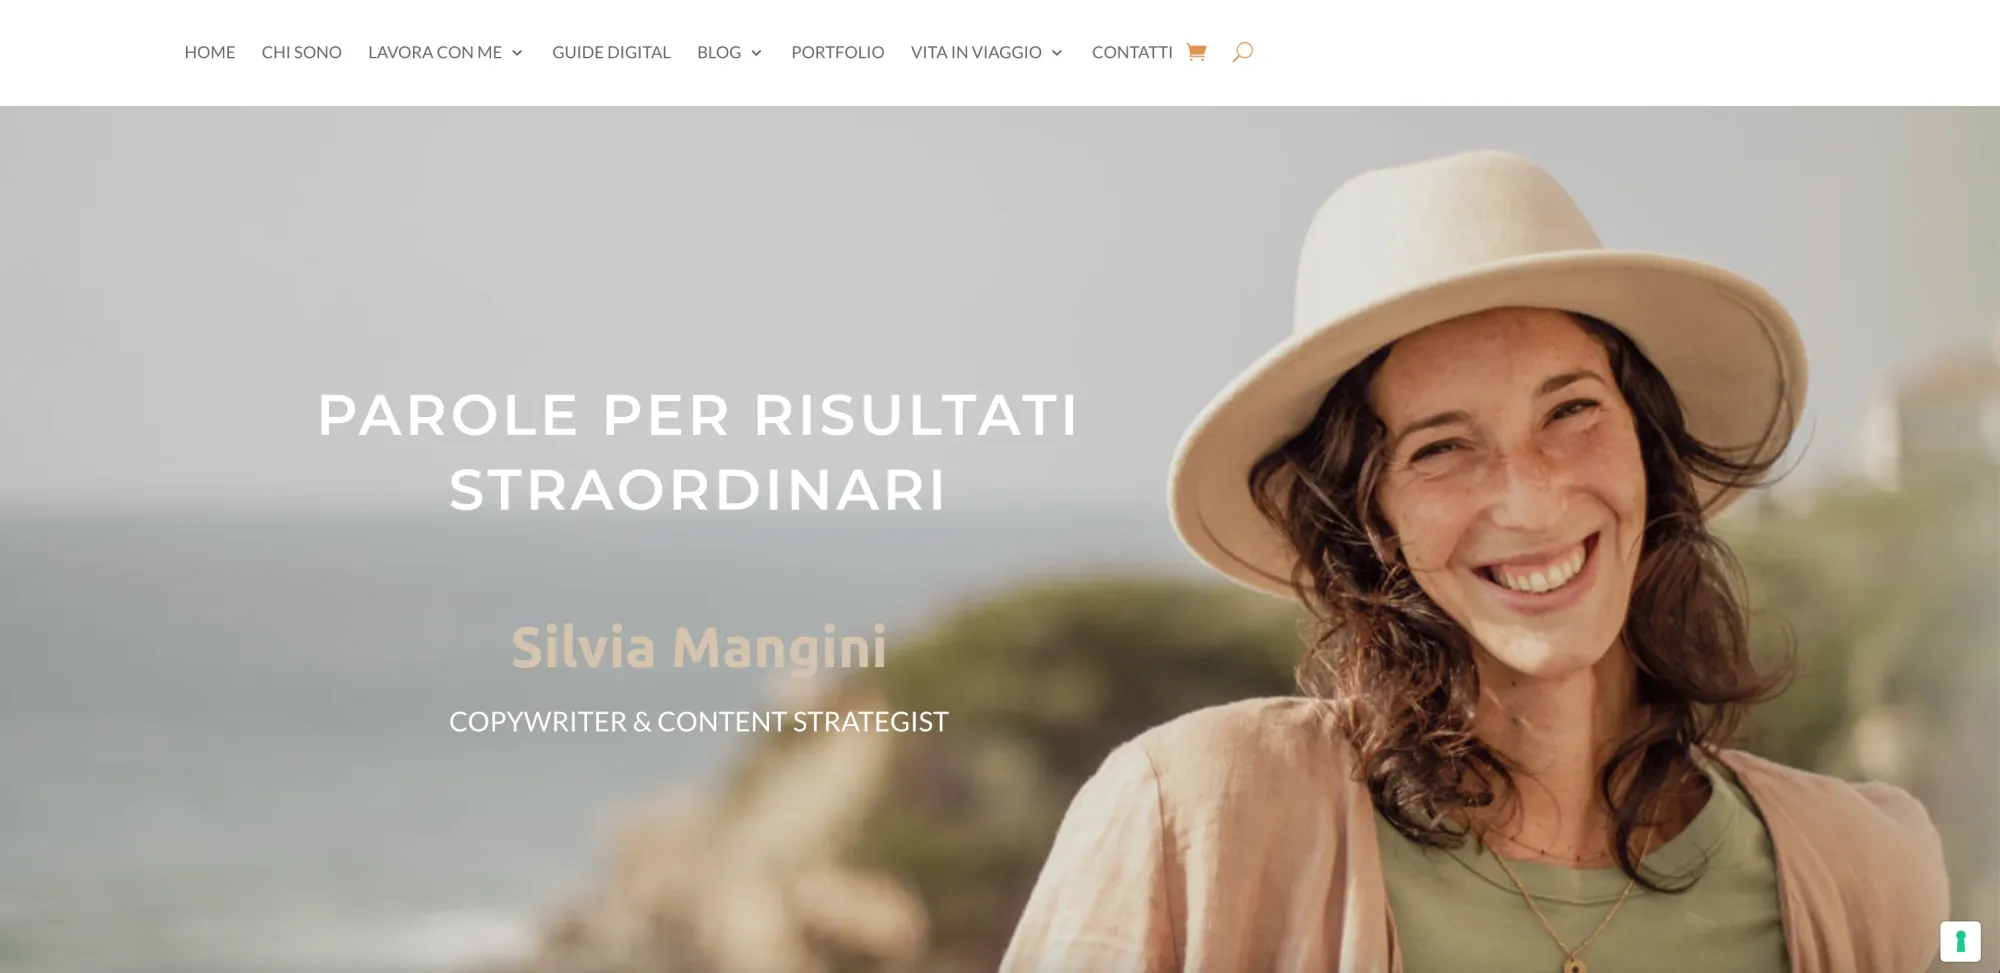 silviamangini.com, un blog di un nomade digitale italiano